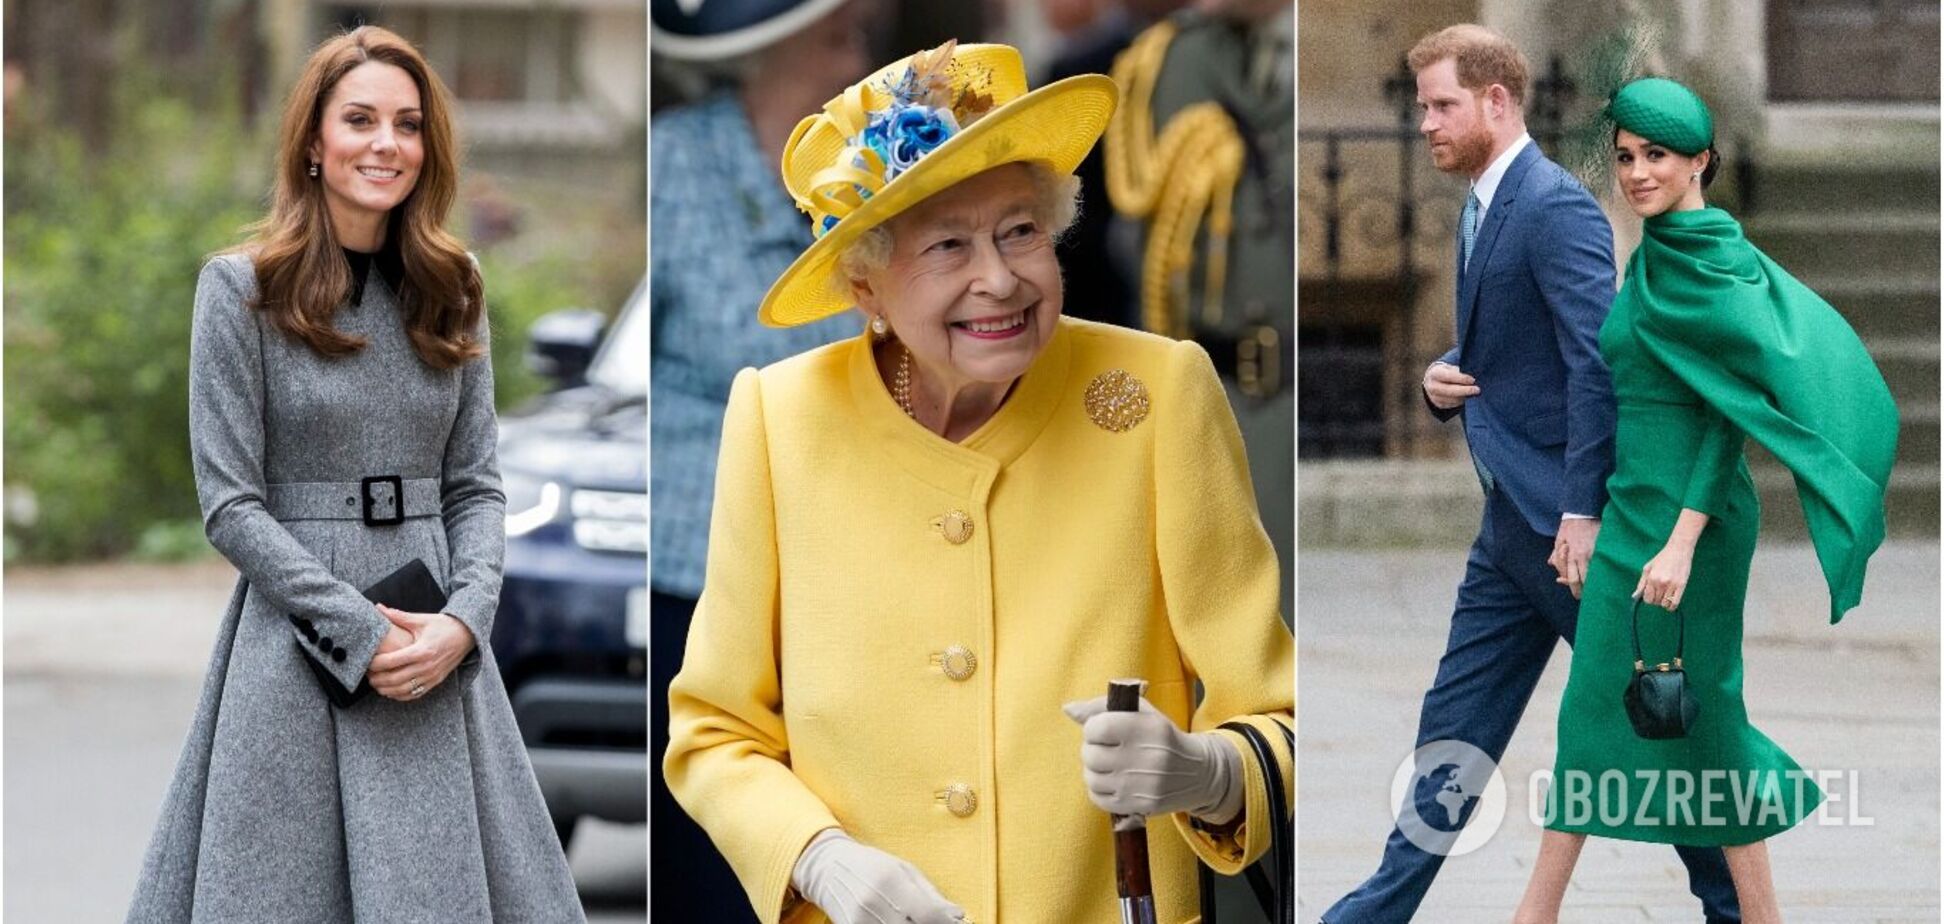 Сім фешн-правил королівської родини, які варто взяти на озброєння: дозволять виглядати бездоганно. Фото